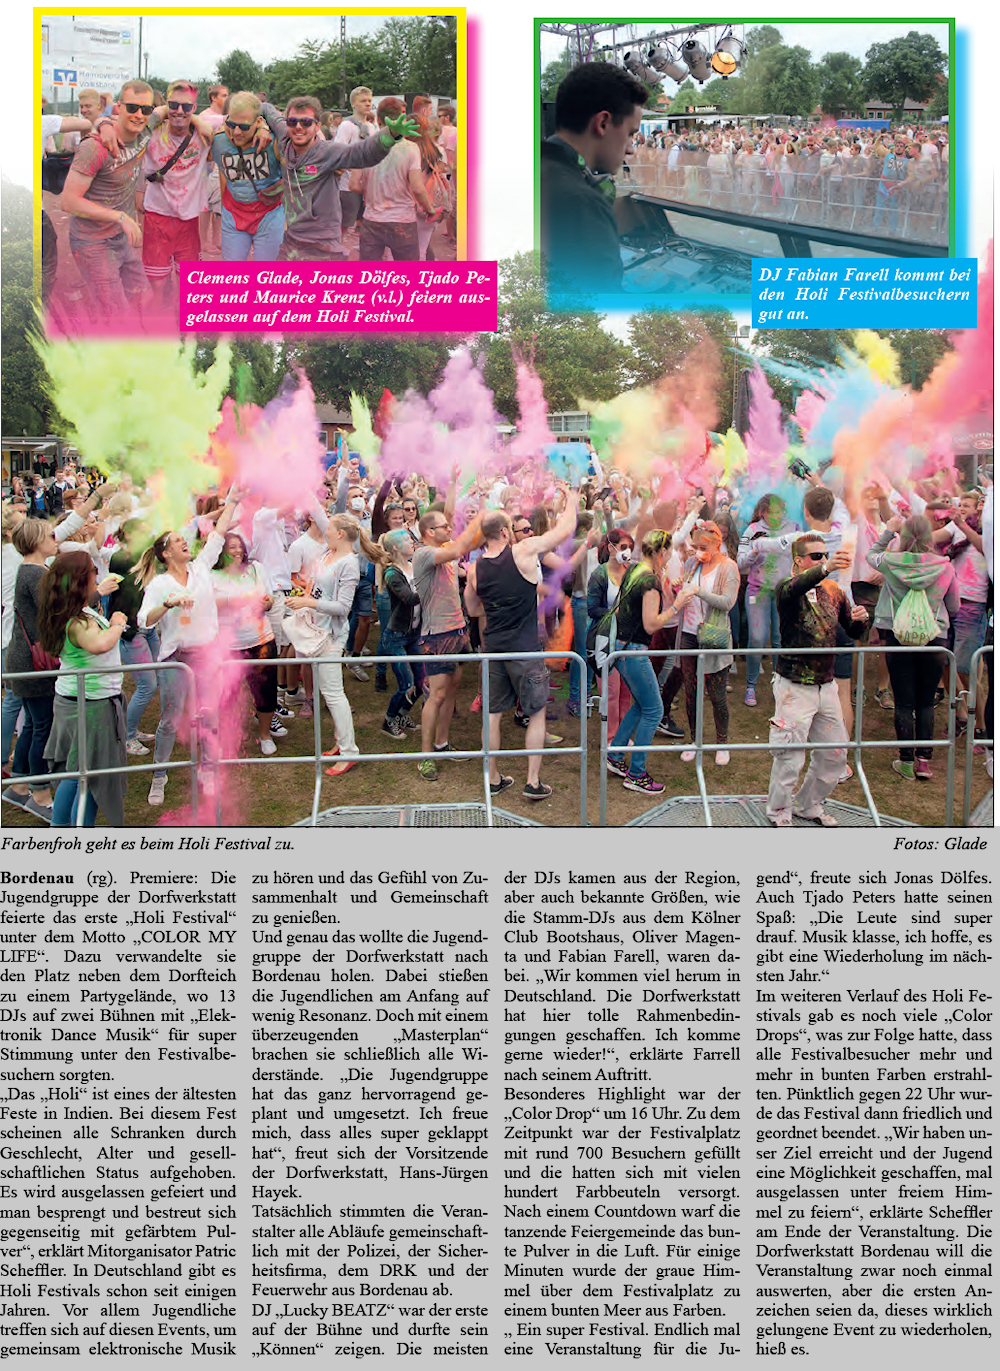 Festivalplatz - ein buntes Meer der Farben (Bilder und Text)